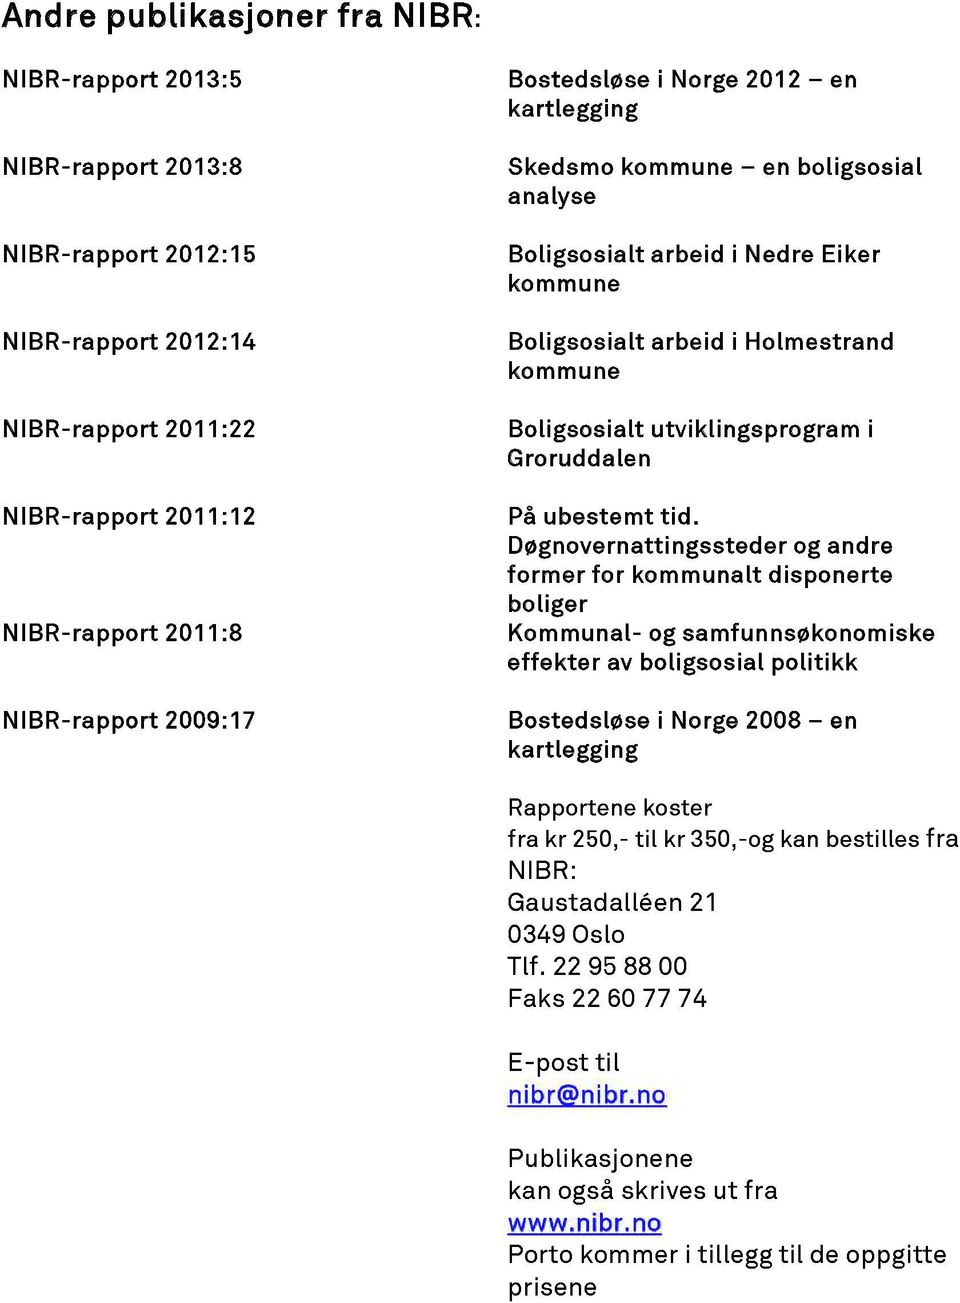 Døgnovernattingss teder og andre former for kommunalt disponerte boliger NIBR-rapport 2011:8 Kommunal- og samfunnsøkonomiske effekter av boligsosial politikk NIBR-rapport 2009:17 Bostedsløse i Norge